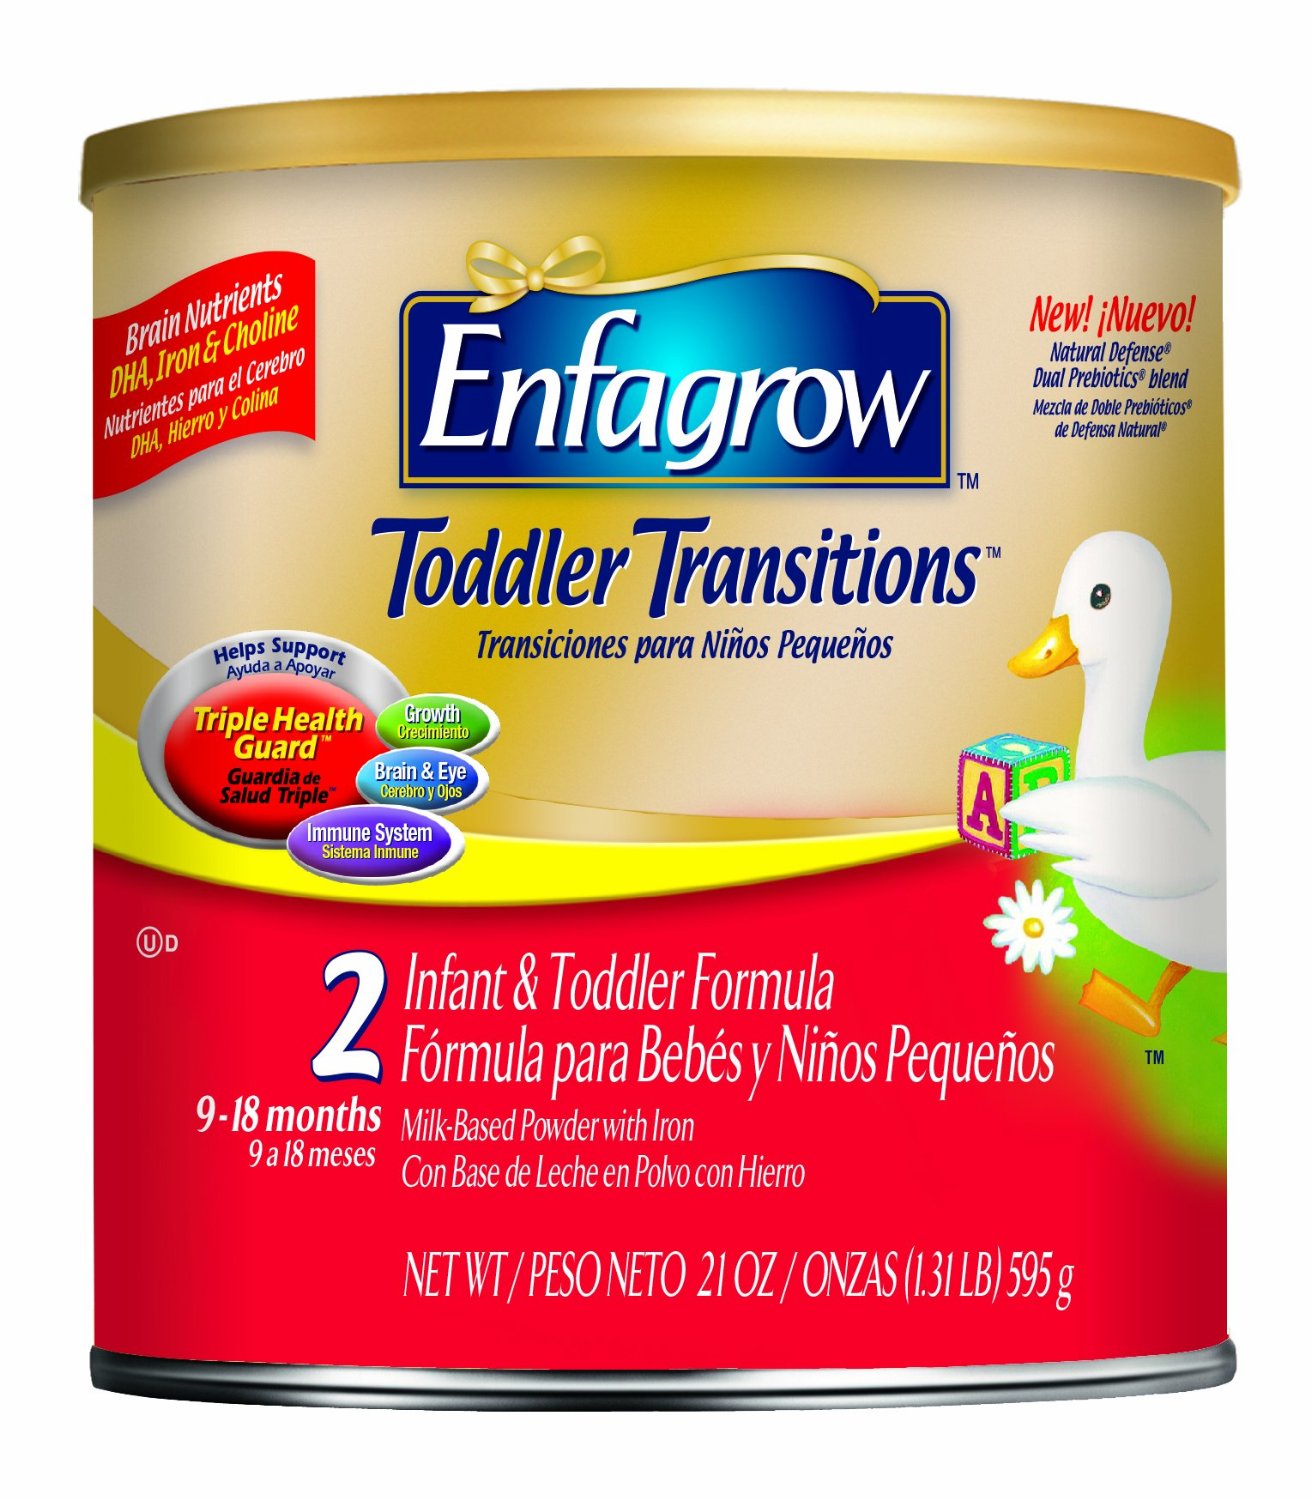 Sữa Enfagrow Toddler số 2 cho bé từ 9 - 18 tháng tuổi